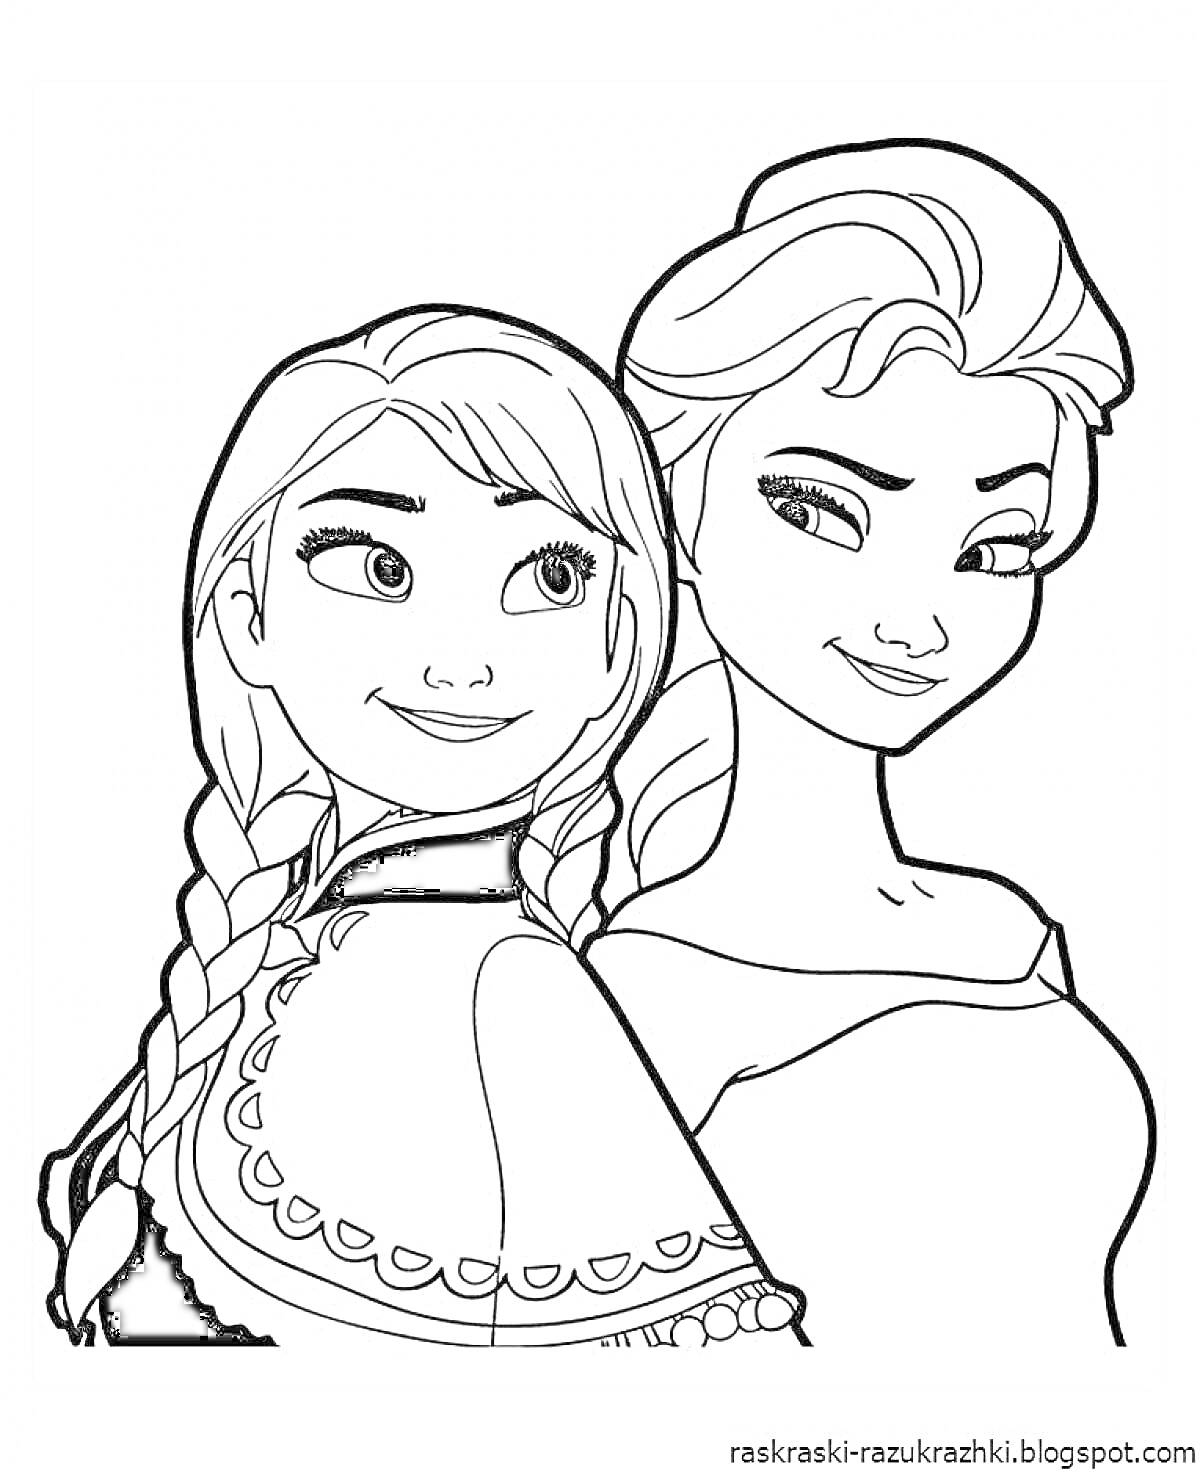 Анимационные девушки с косами и завитыми волосами, стоящие спина к спине